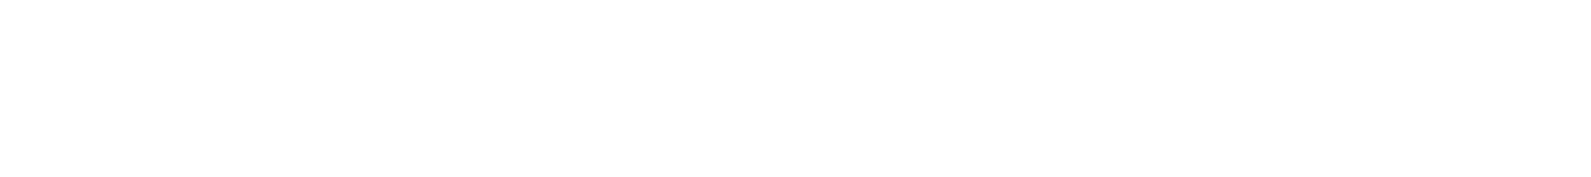 Molekule Group logo large for dark backgrounds (transparent PNG)